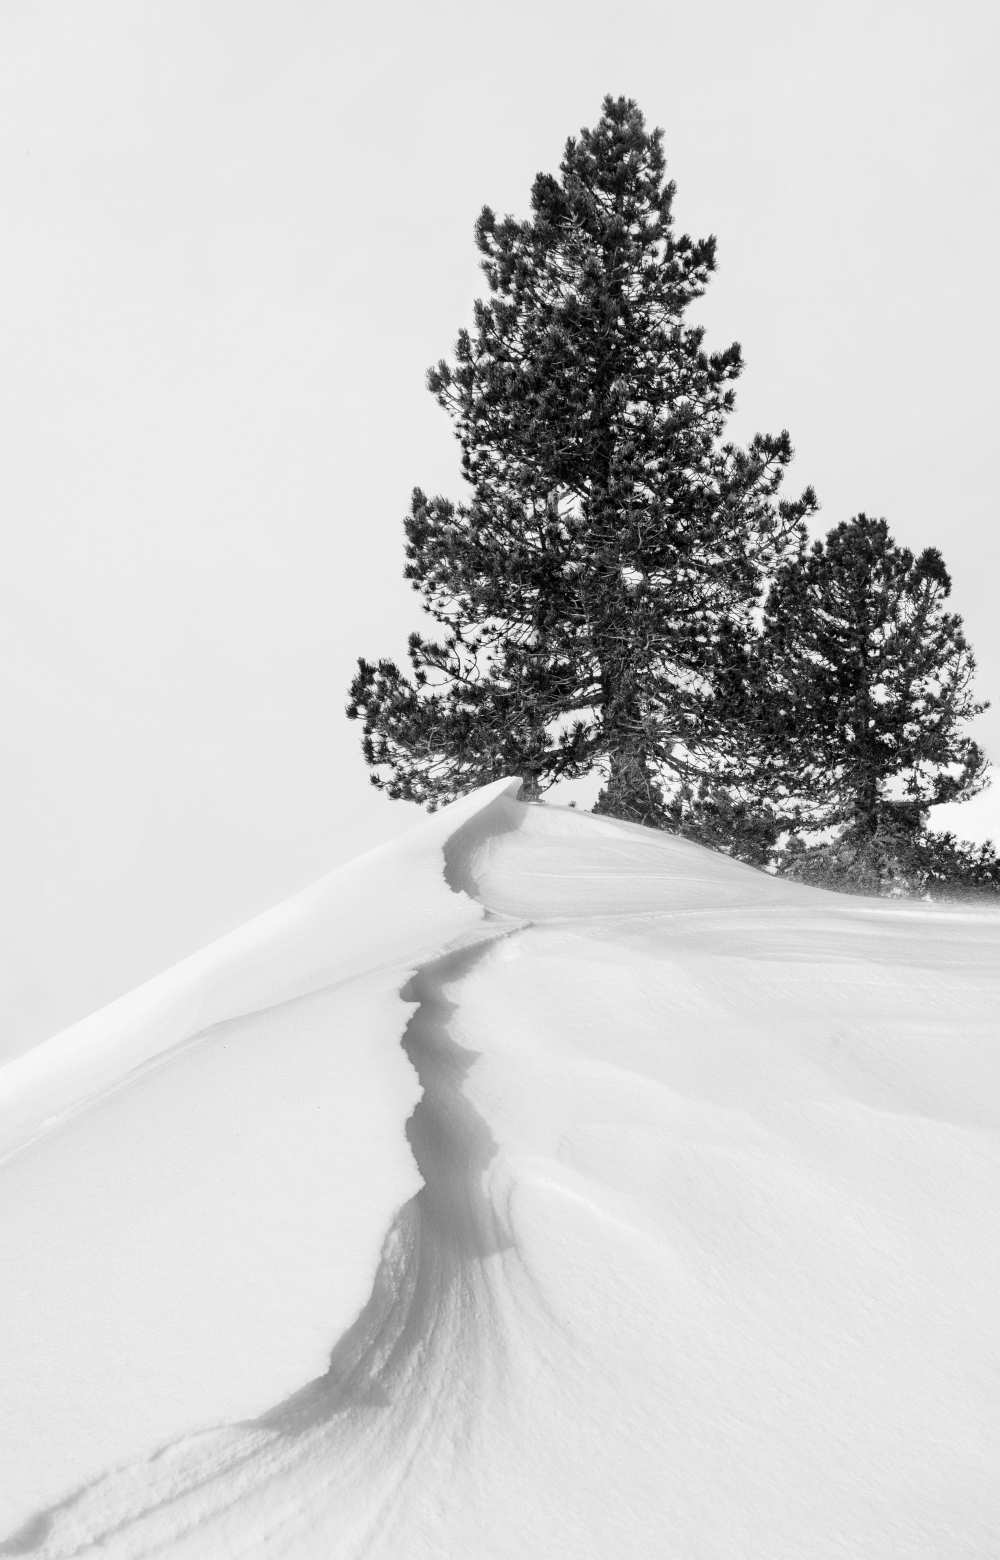 About the snow and forms de Rodrigo Núñez Buj